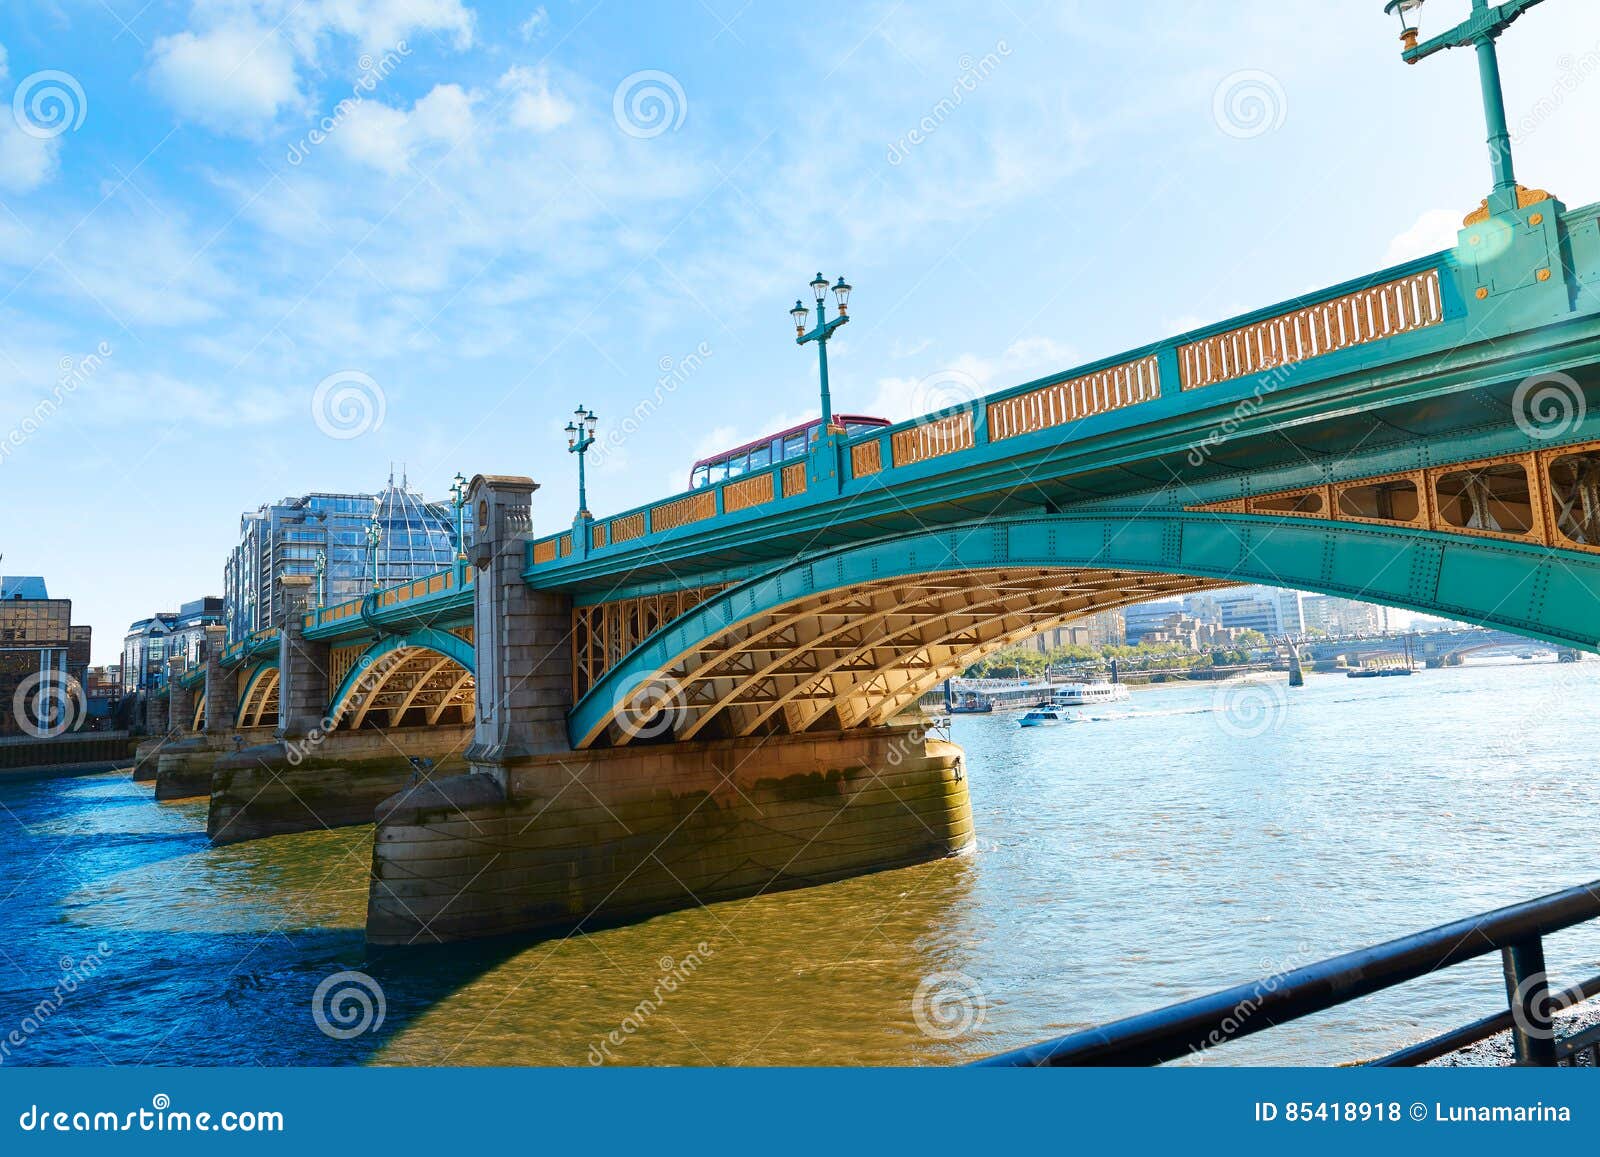 Через какую реку перекинут мост. Мост саутварк Лондон. Саутуарк мост из Лондона. Мост Саусворк в Лондоне. Мост Саутворк фото.